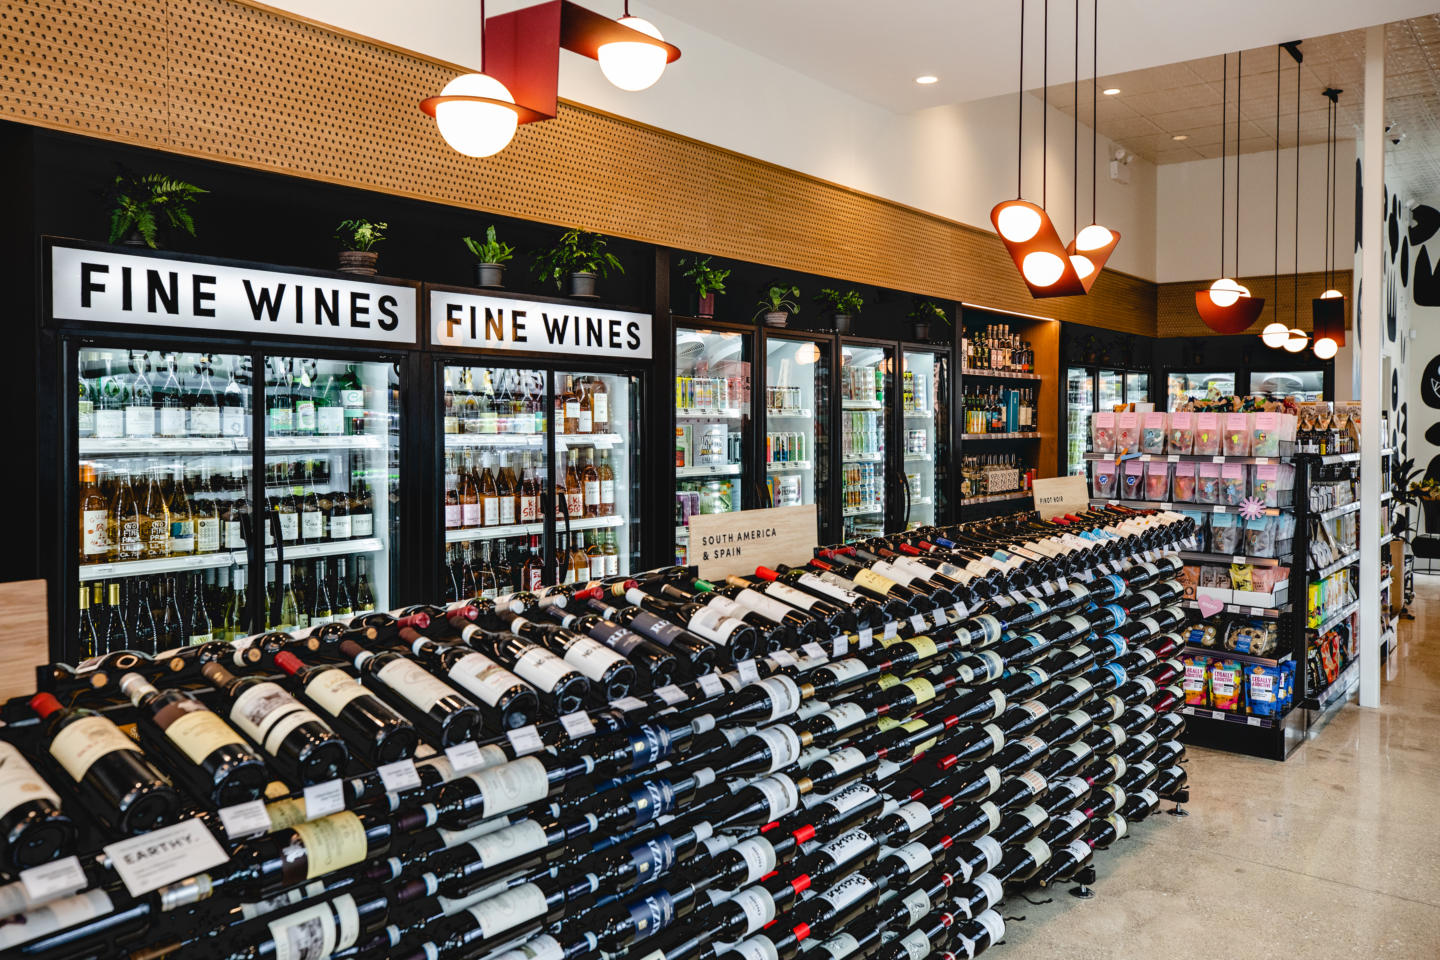 Custom retail shelving for wine made by Morgan Li